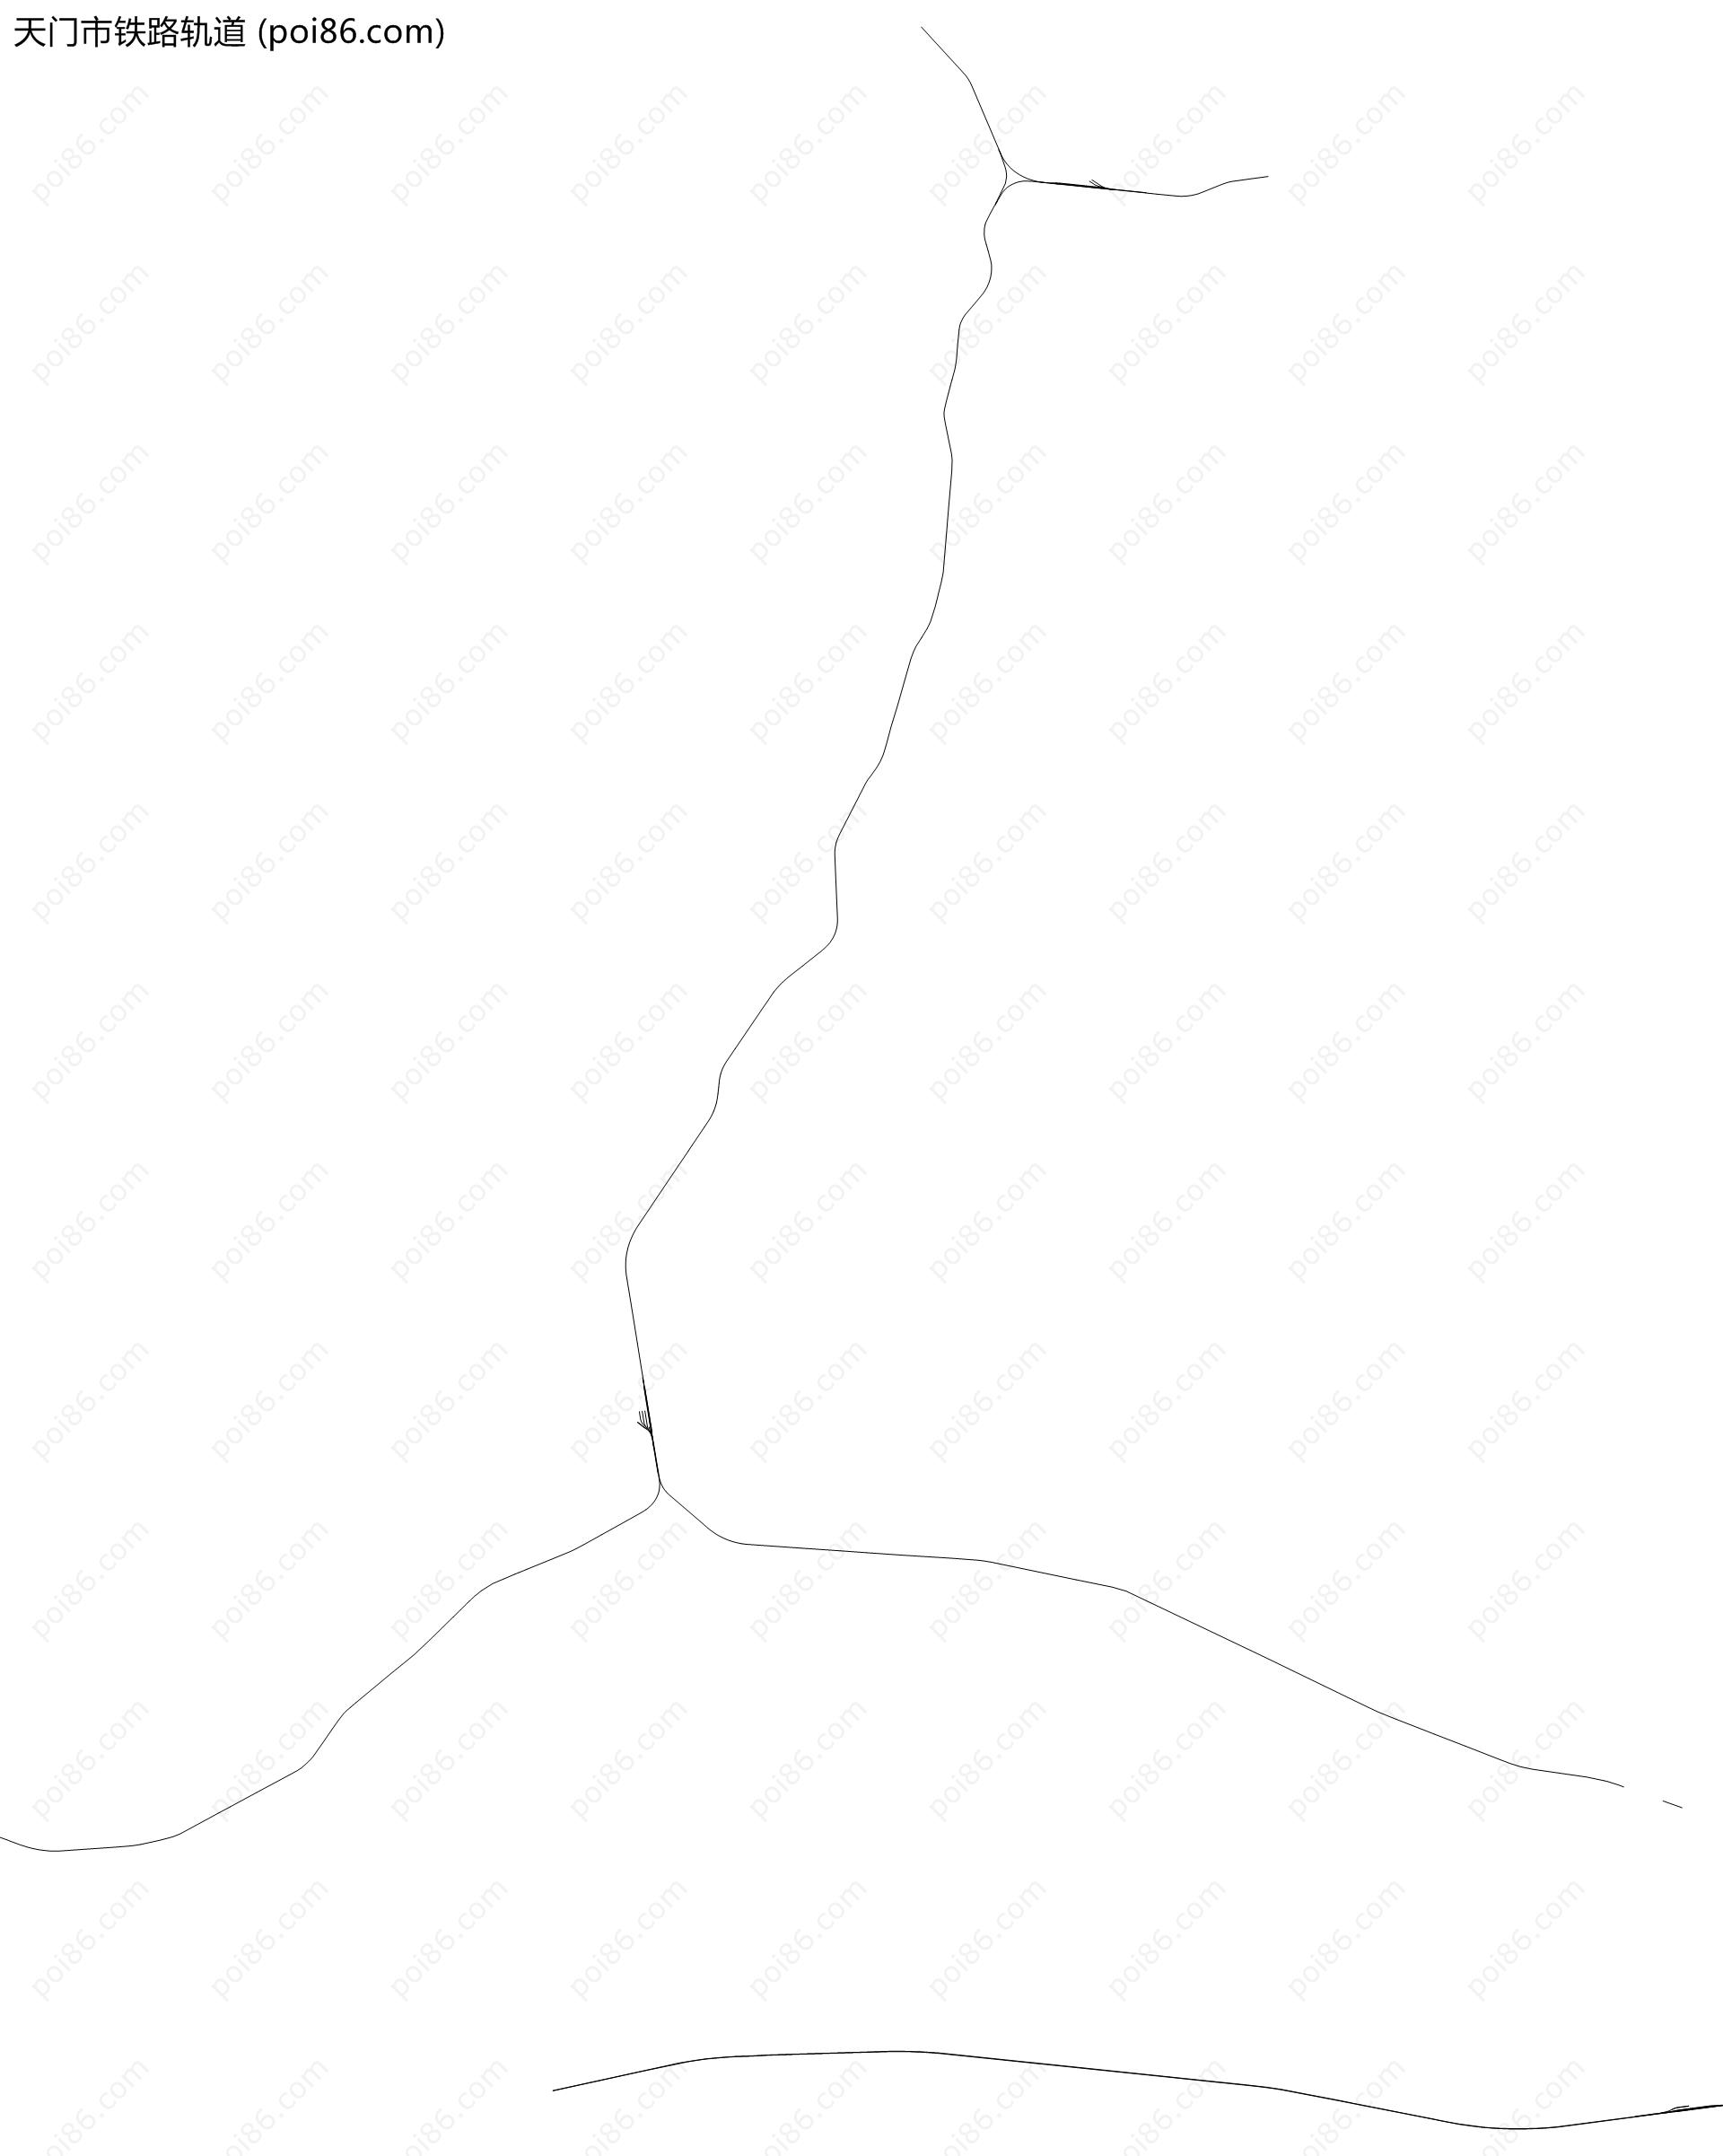 天门市铁路轨道地图